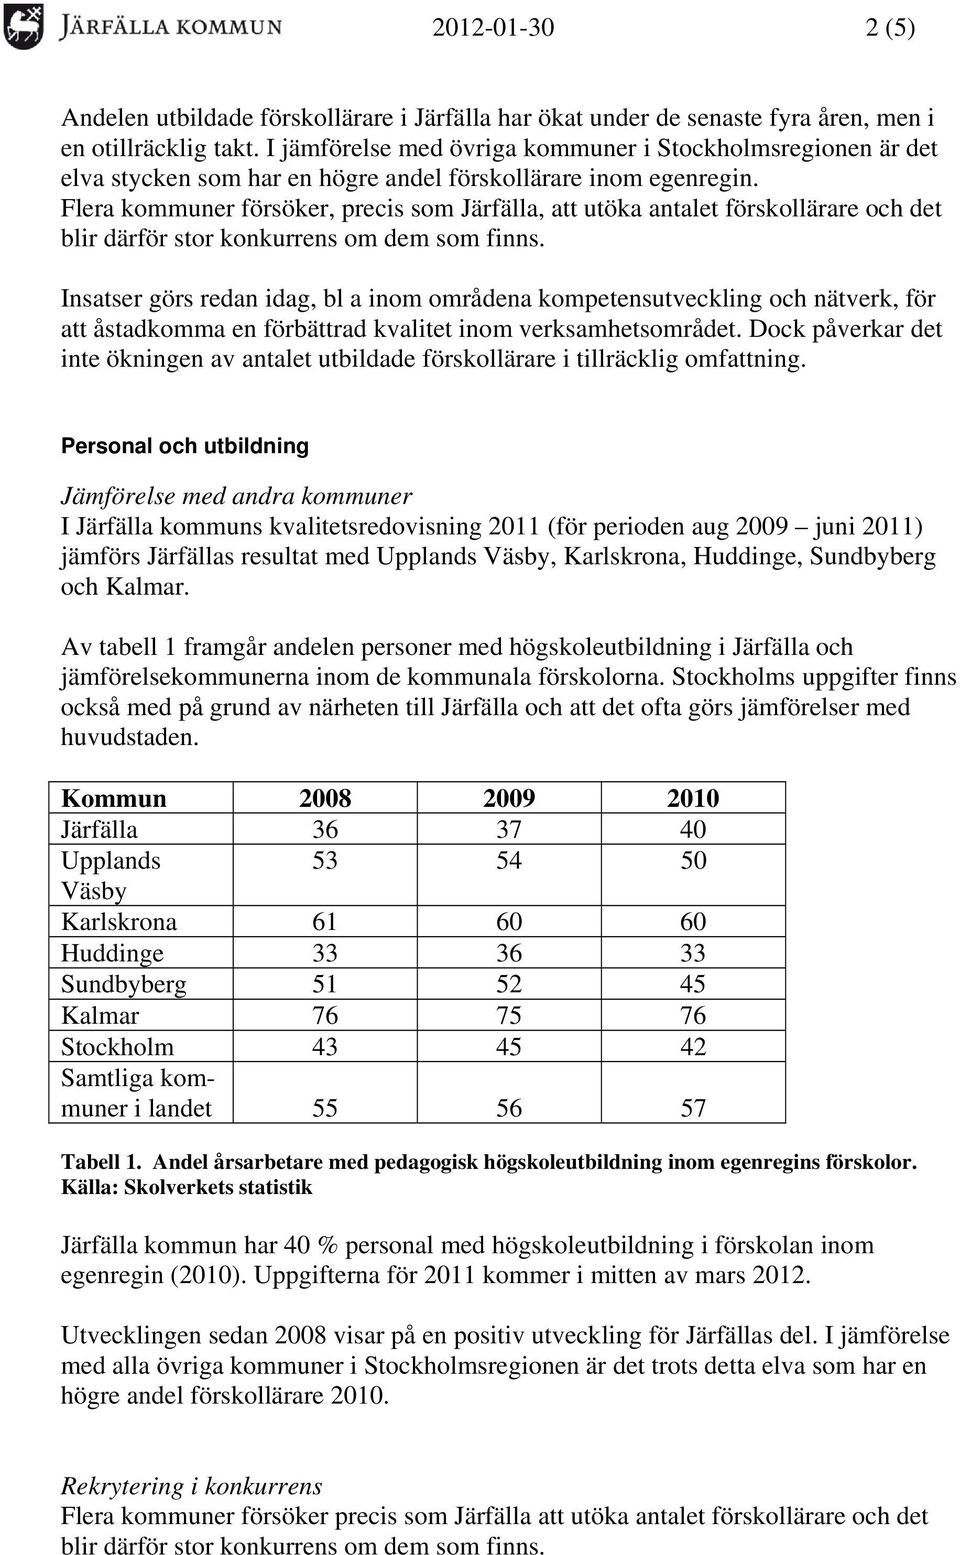 Flera kommuner försöker, precis som Järfälla, att utöka antalet förskollärare och det blir därför stor konkurrens om dem som finns.